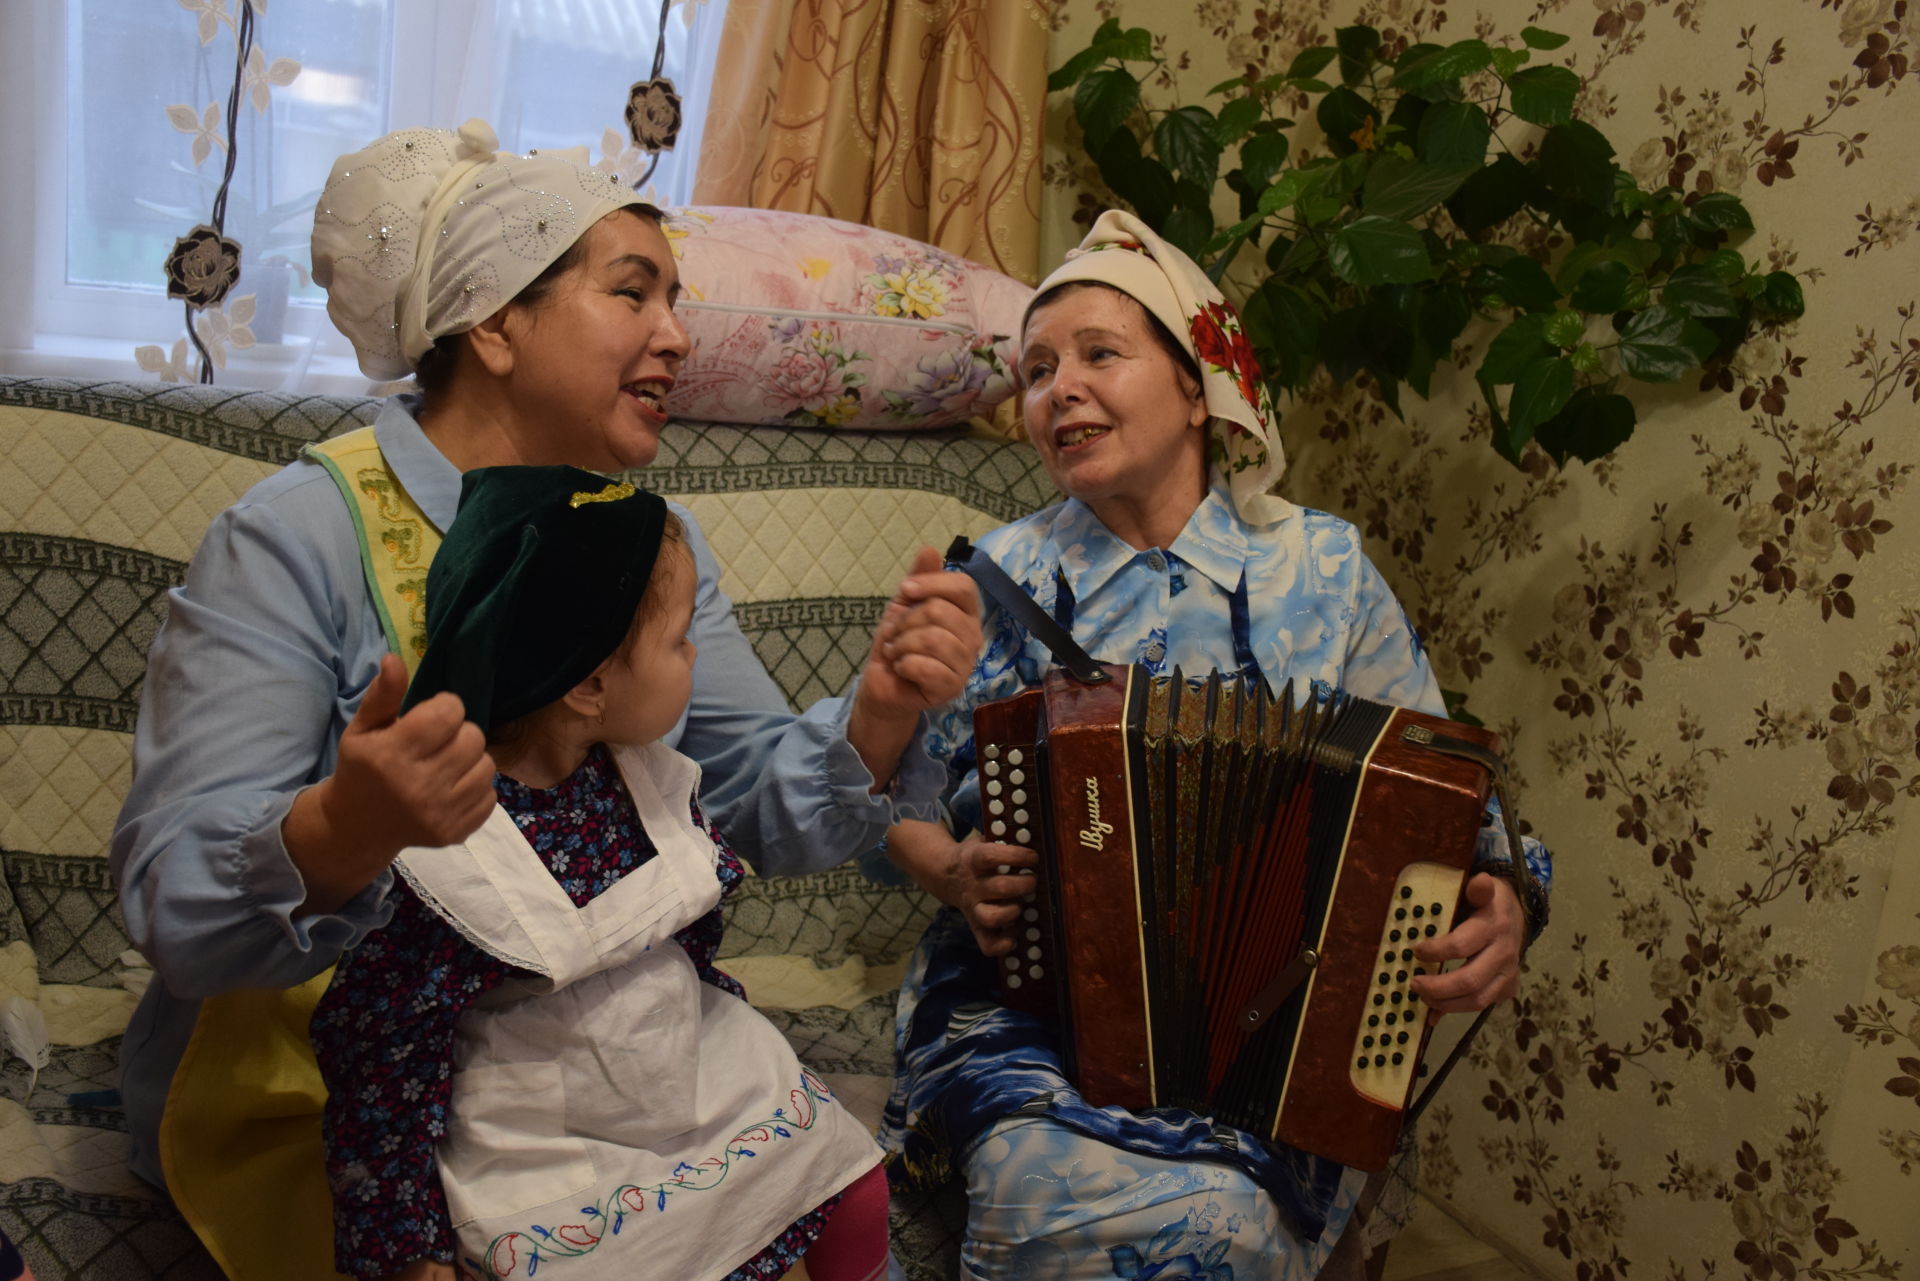 Жители села Кривое Озеро соблюдают традиции предков и передают их в наследство